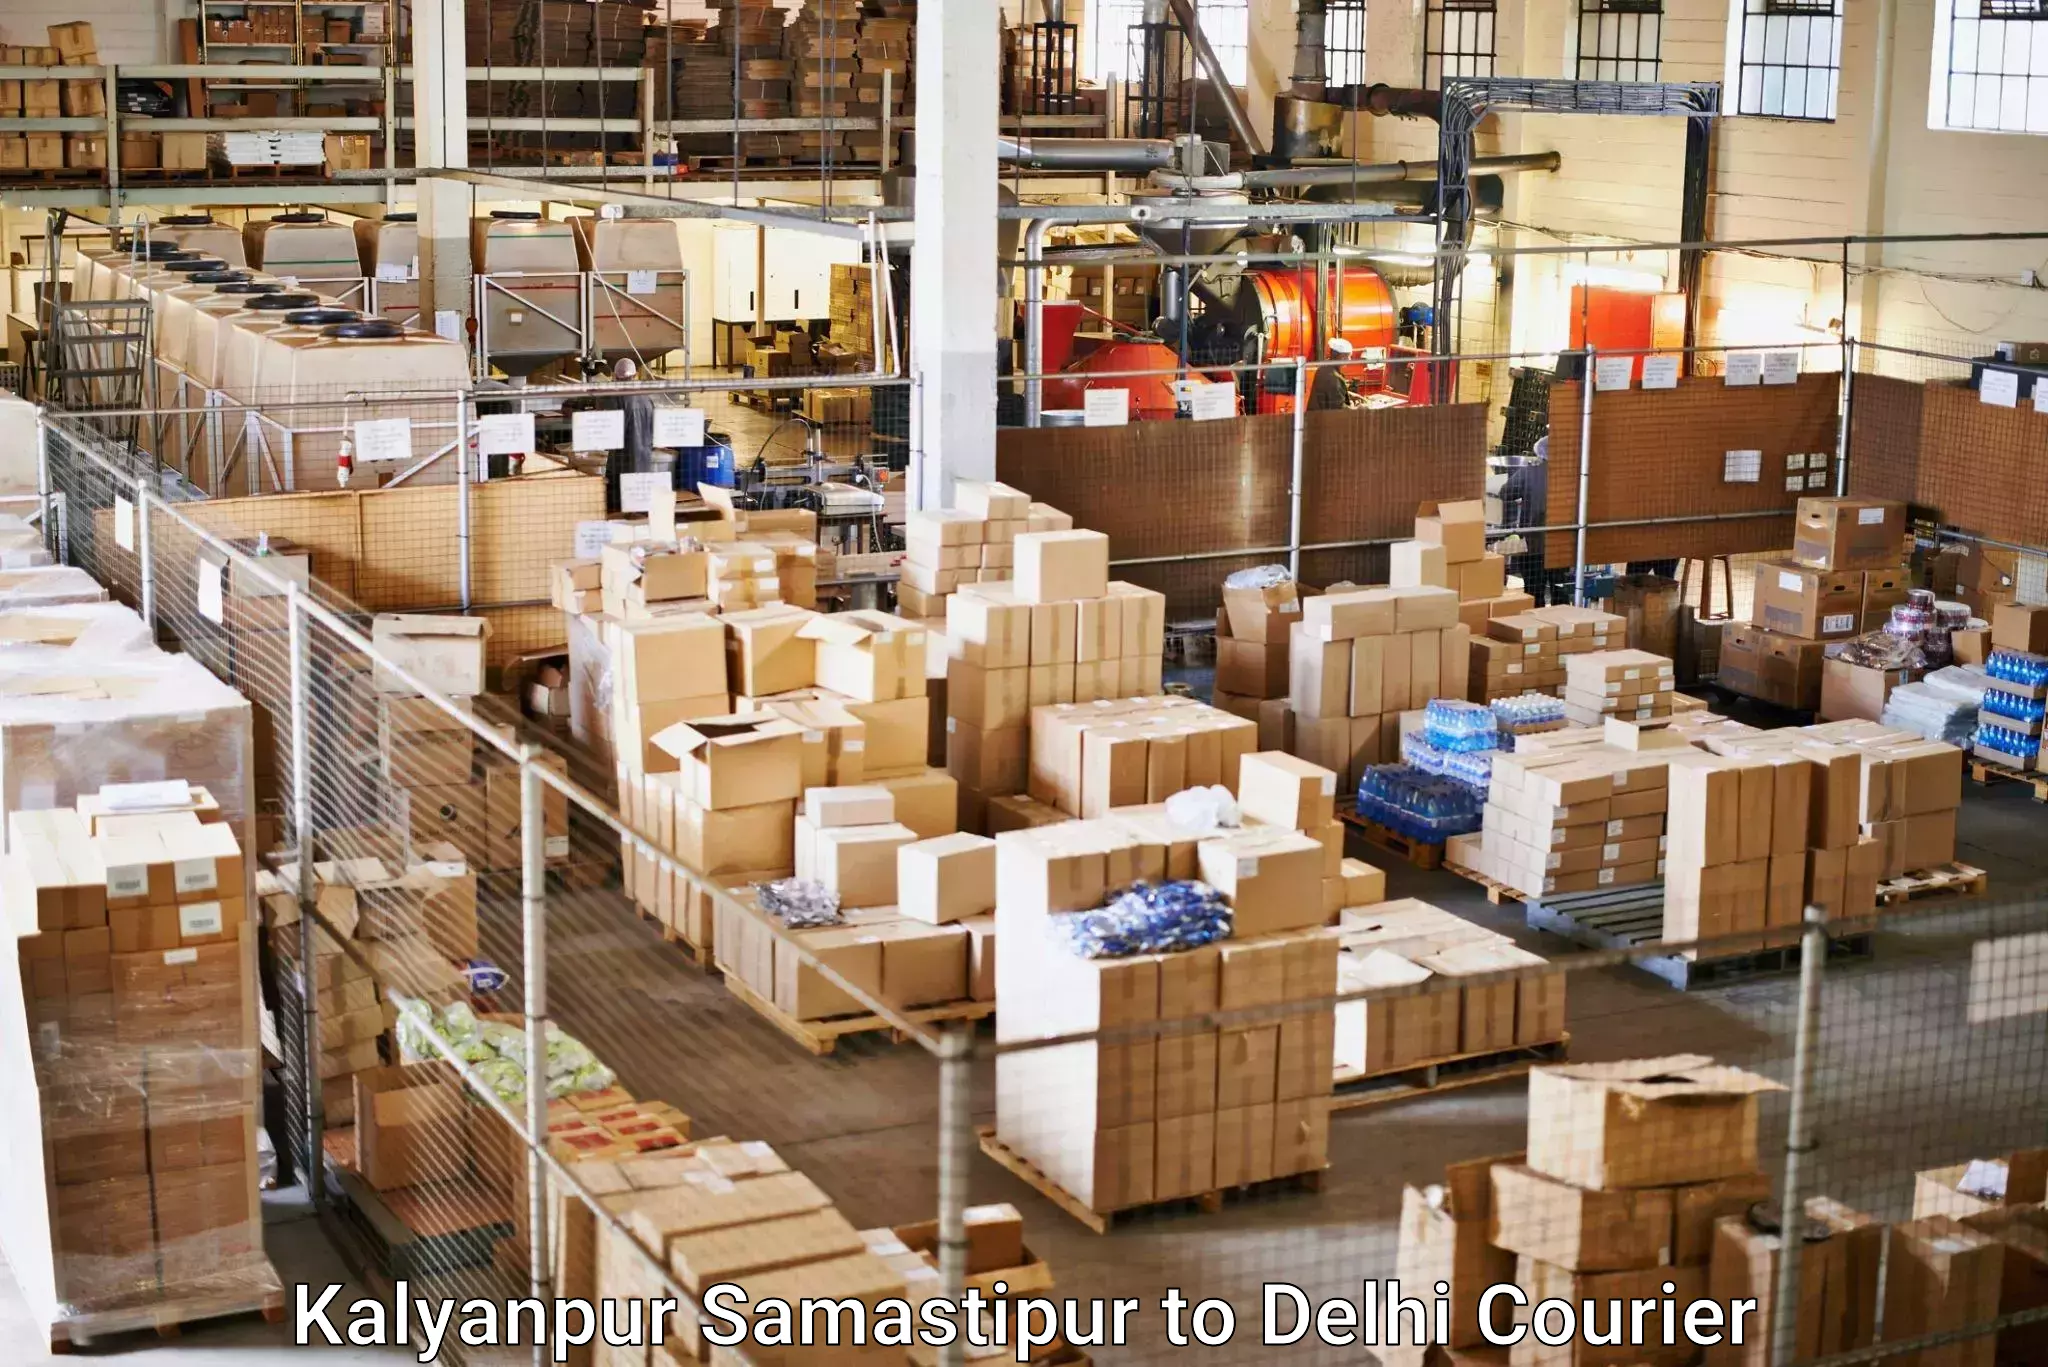 Modern delivery methods Kalyanpur Samastipur to Jawaharlal Nehru University New Delhi